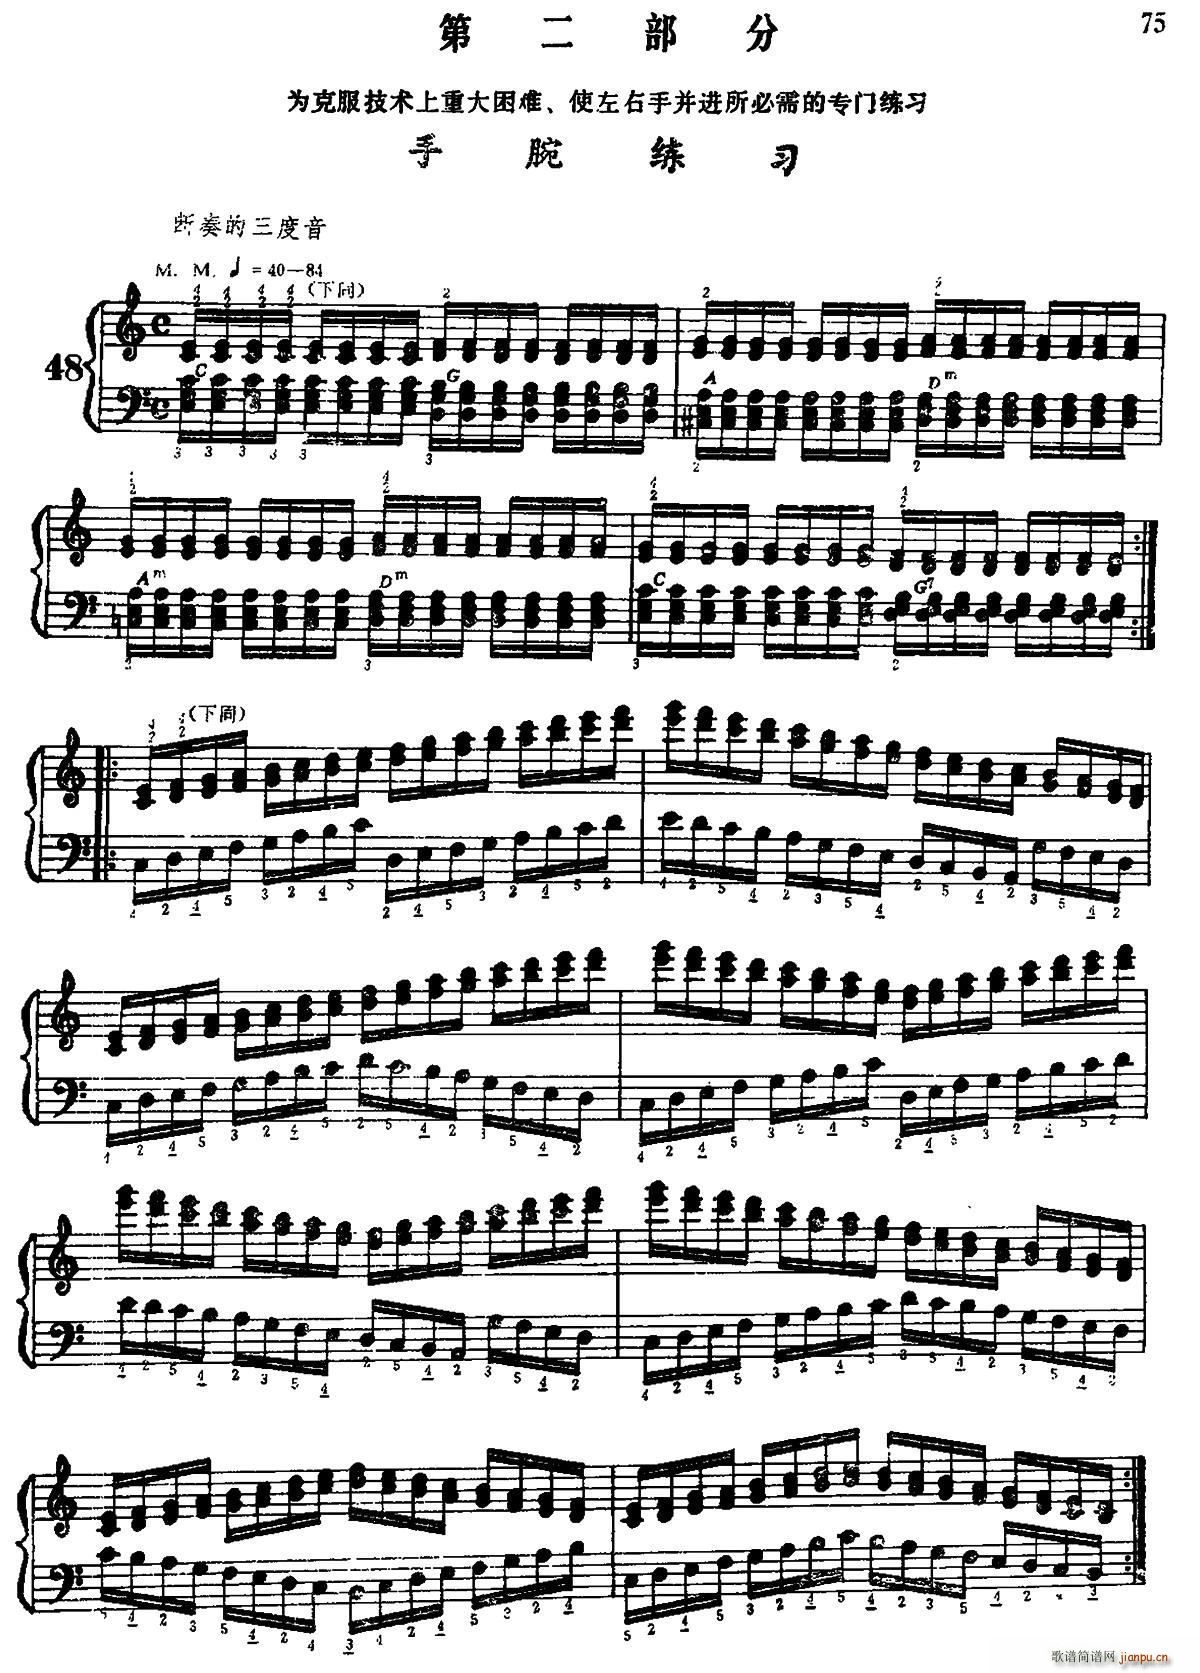 手风琴手指练习 第二部分 右手的手腕练习(手风琴谱)1